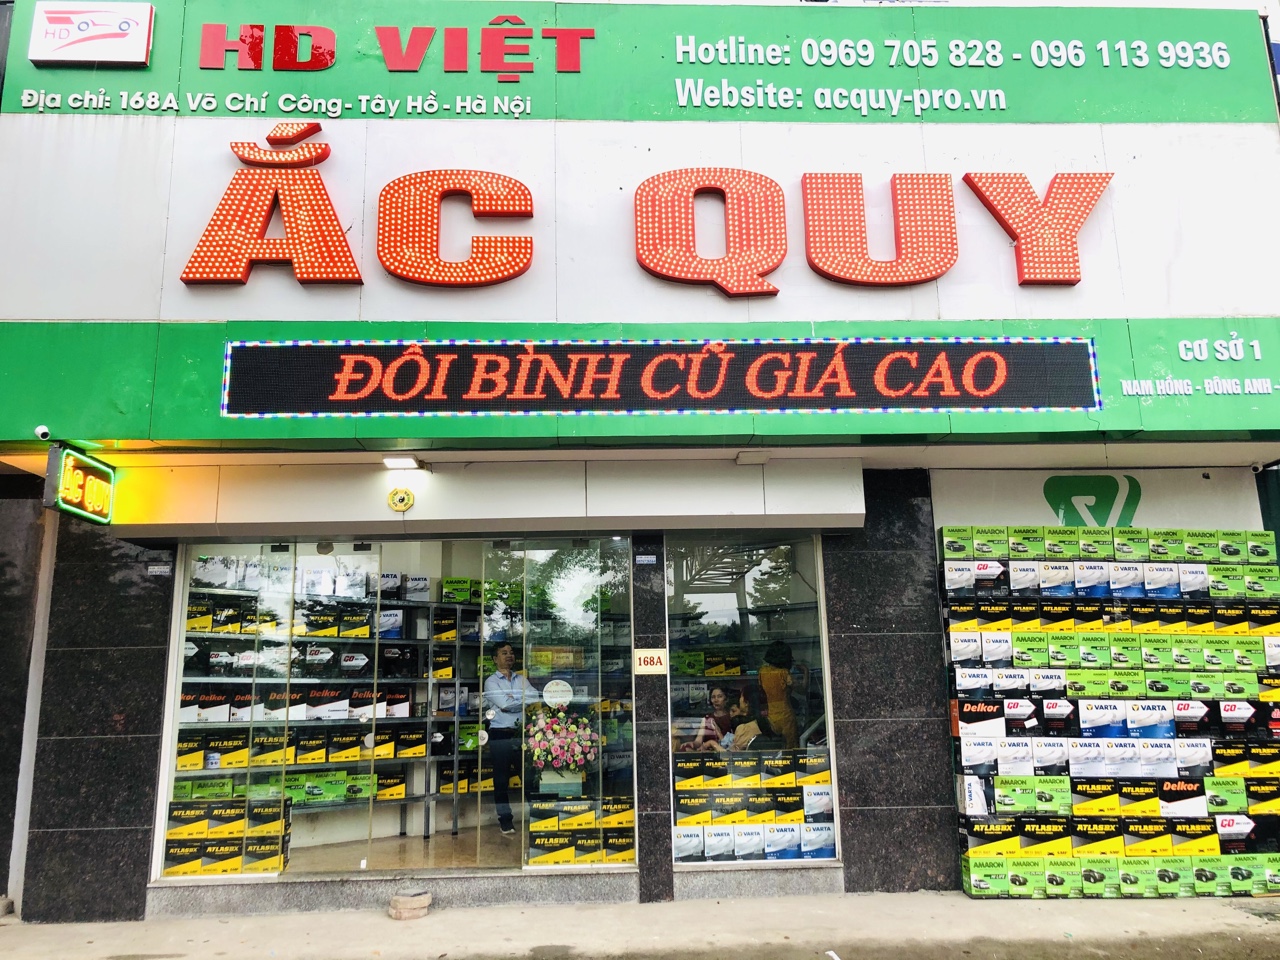 cơ sở đại lý ắc quy HD Việt